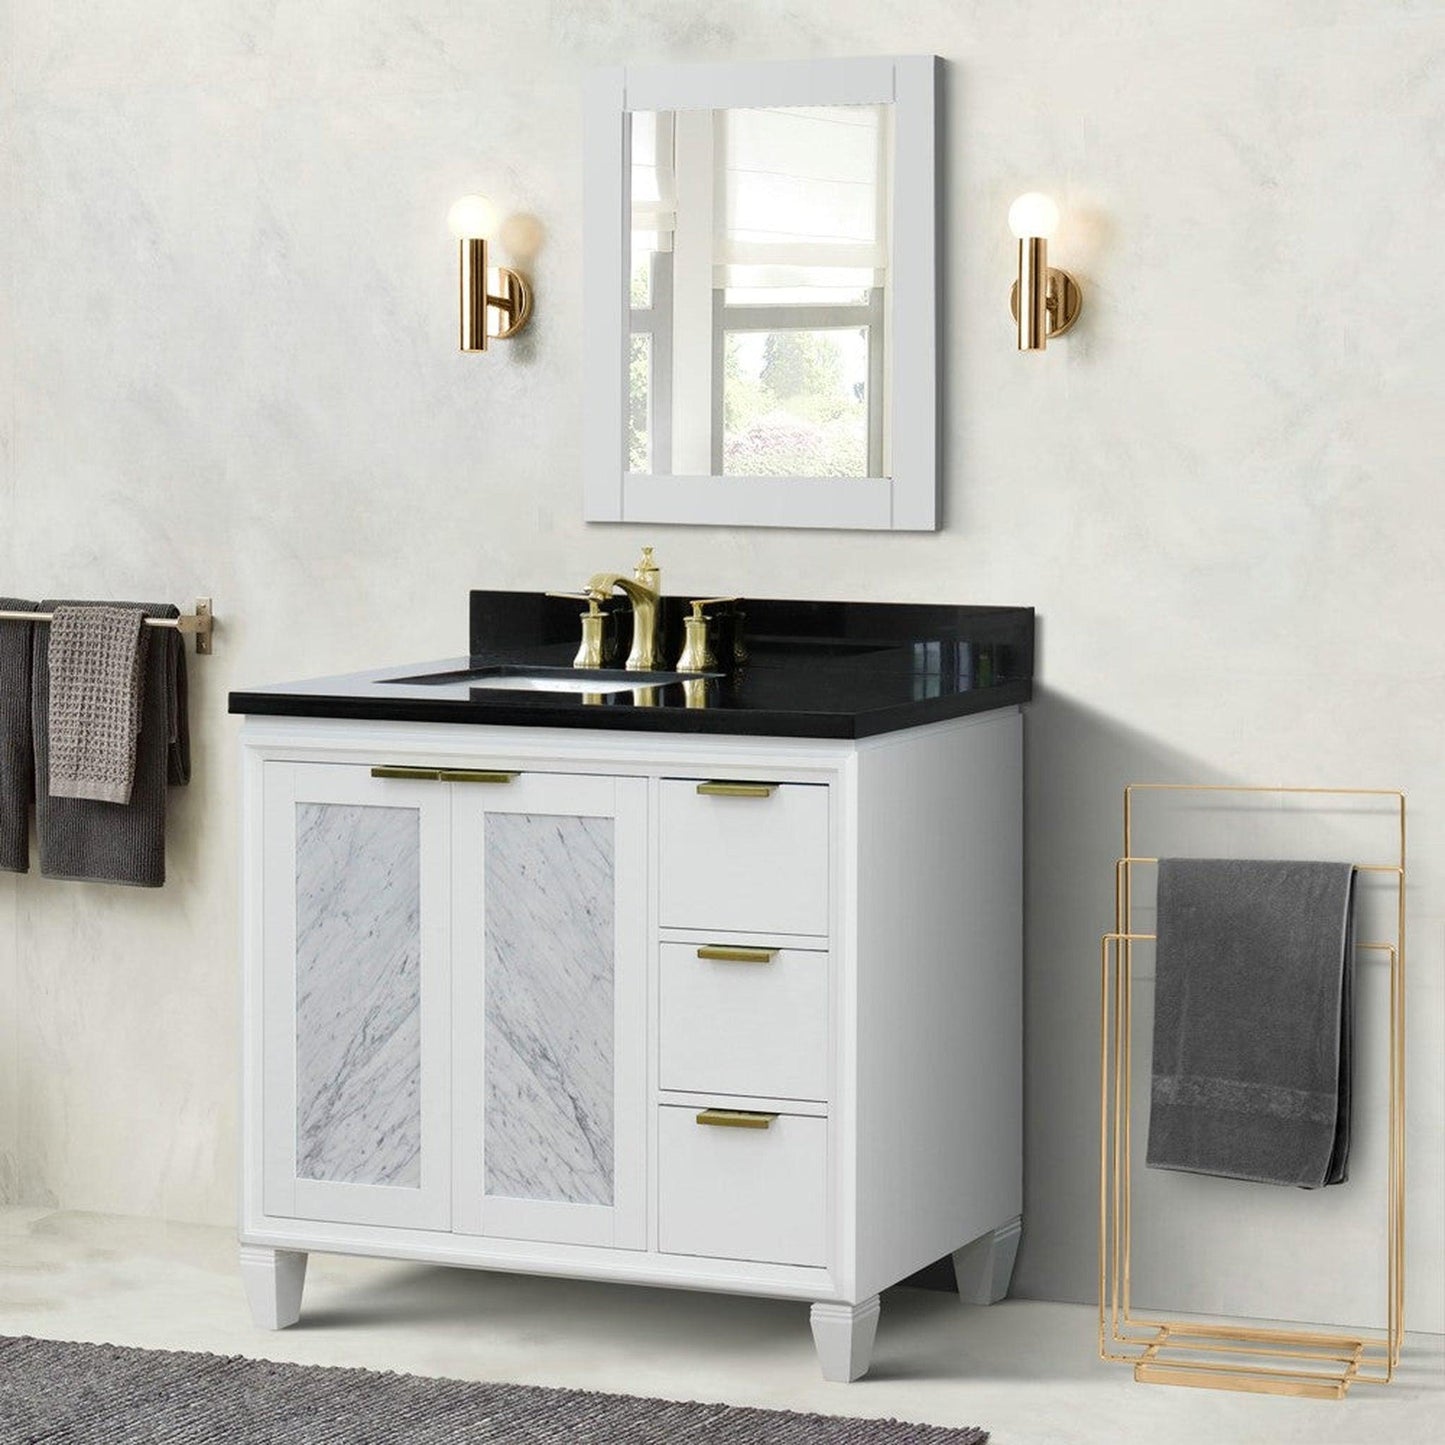 Bellaterra Home Trento 43" 2-Door 3-Drawer White Freestanding Vanity Set With Ceramic Left Undermount Rectangular Sink and Black Galaxy Granite Top, and Left Door Cabinet